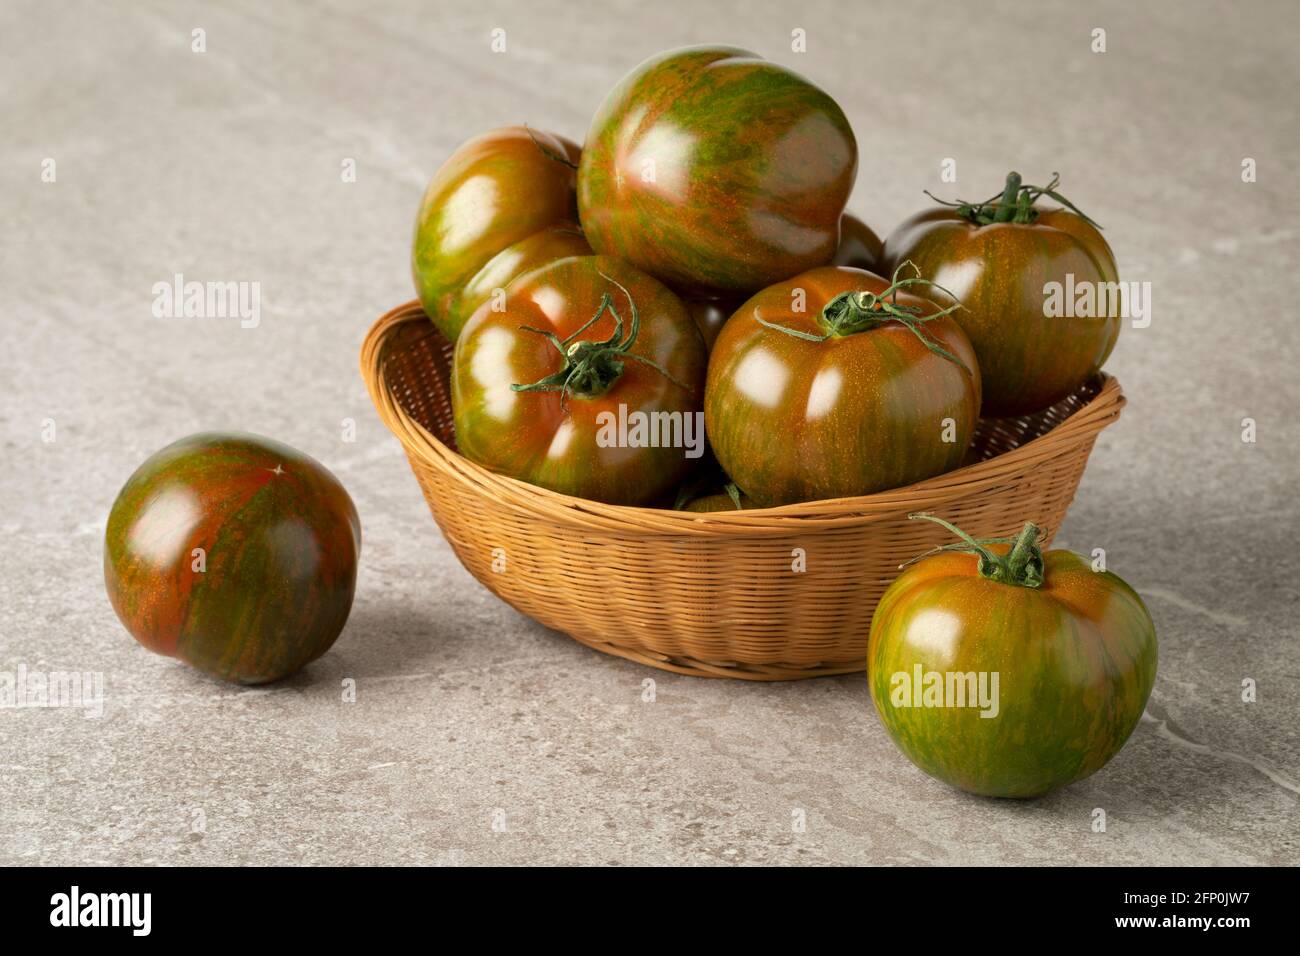 Panier de tomates entières fraîches et rayées rouges et vertes mûres gros plan Banque D'Images